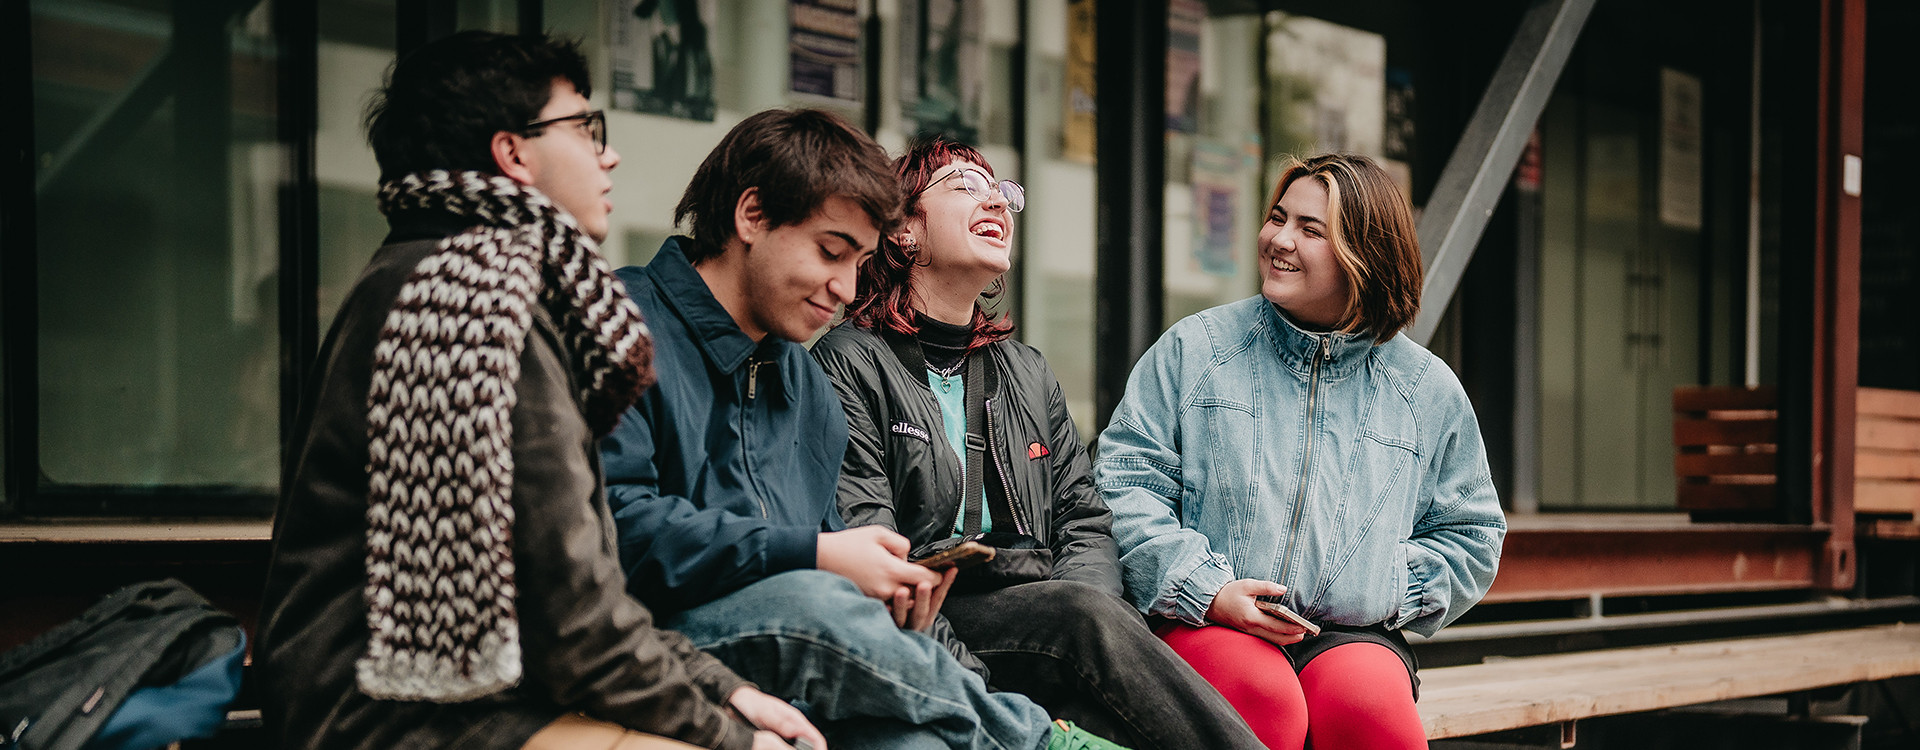 Estudiantes riendo y compartiendo fuera de las salas en el campus universitario